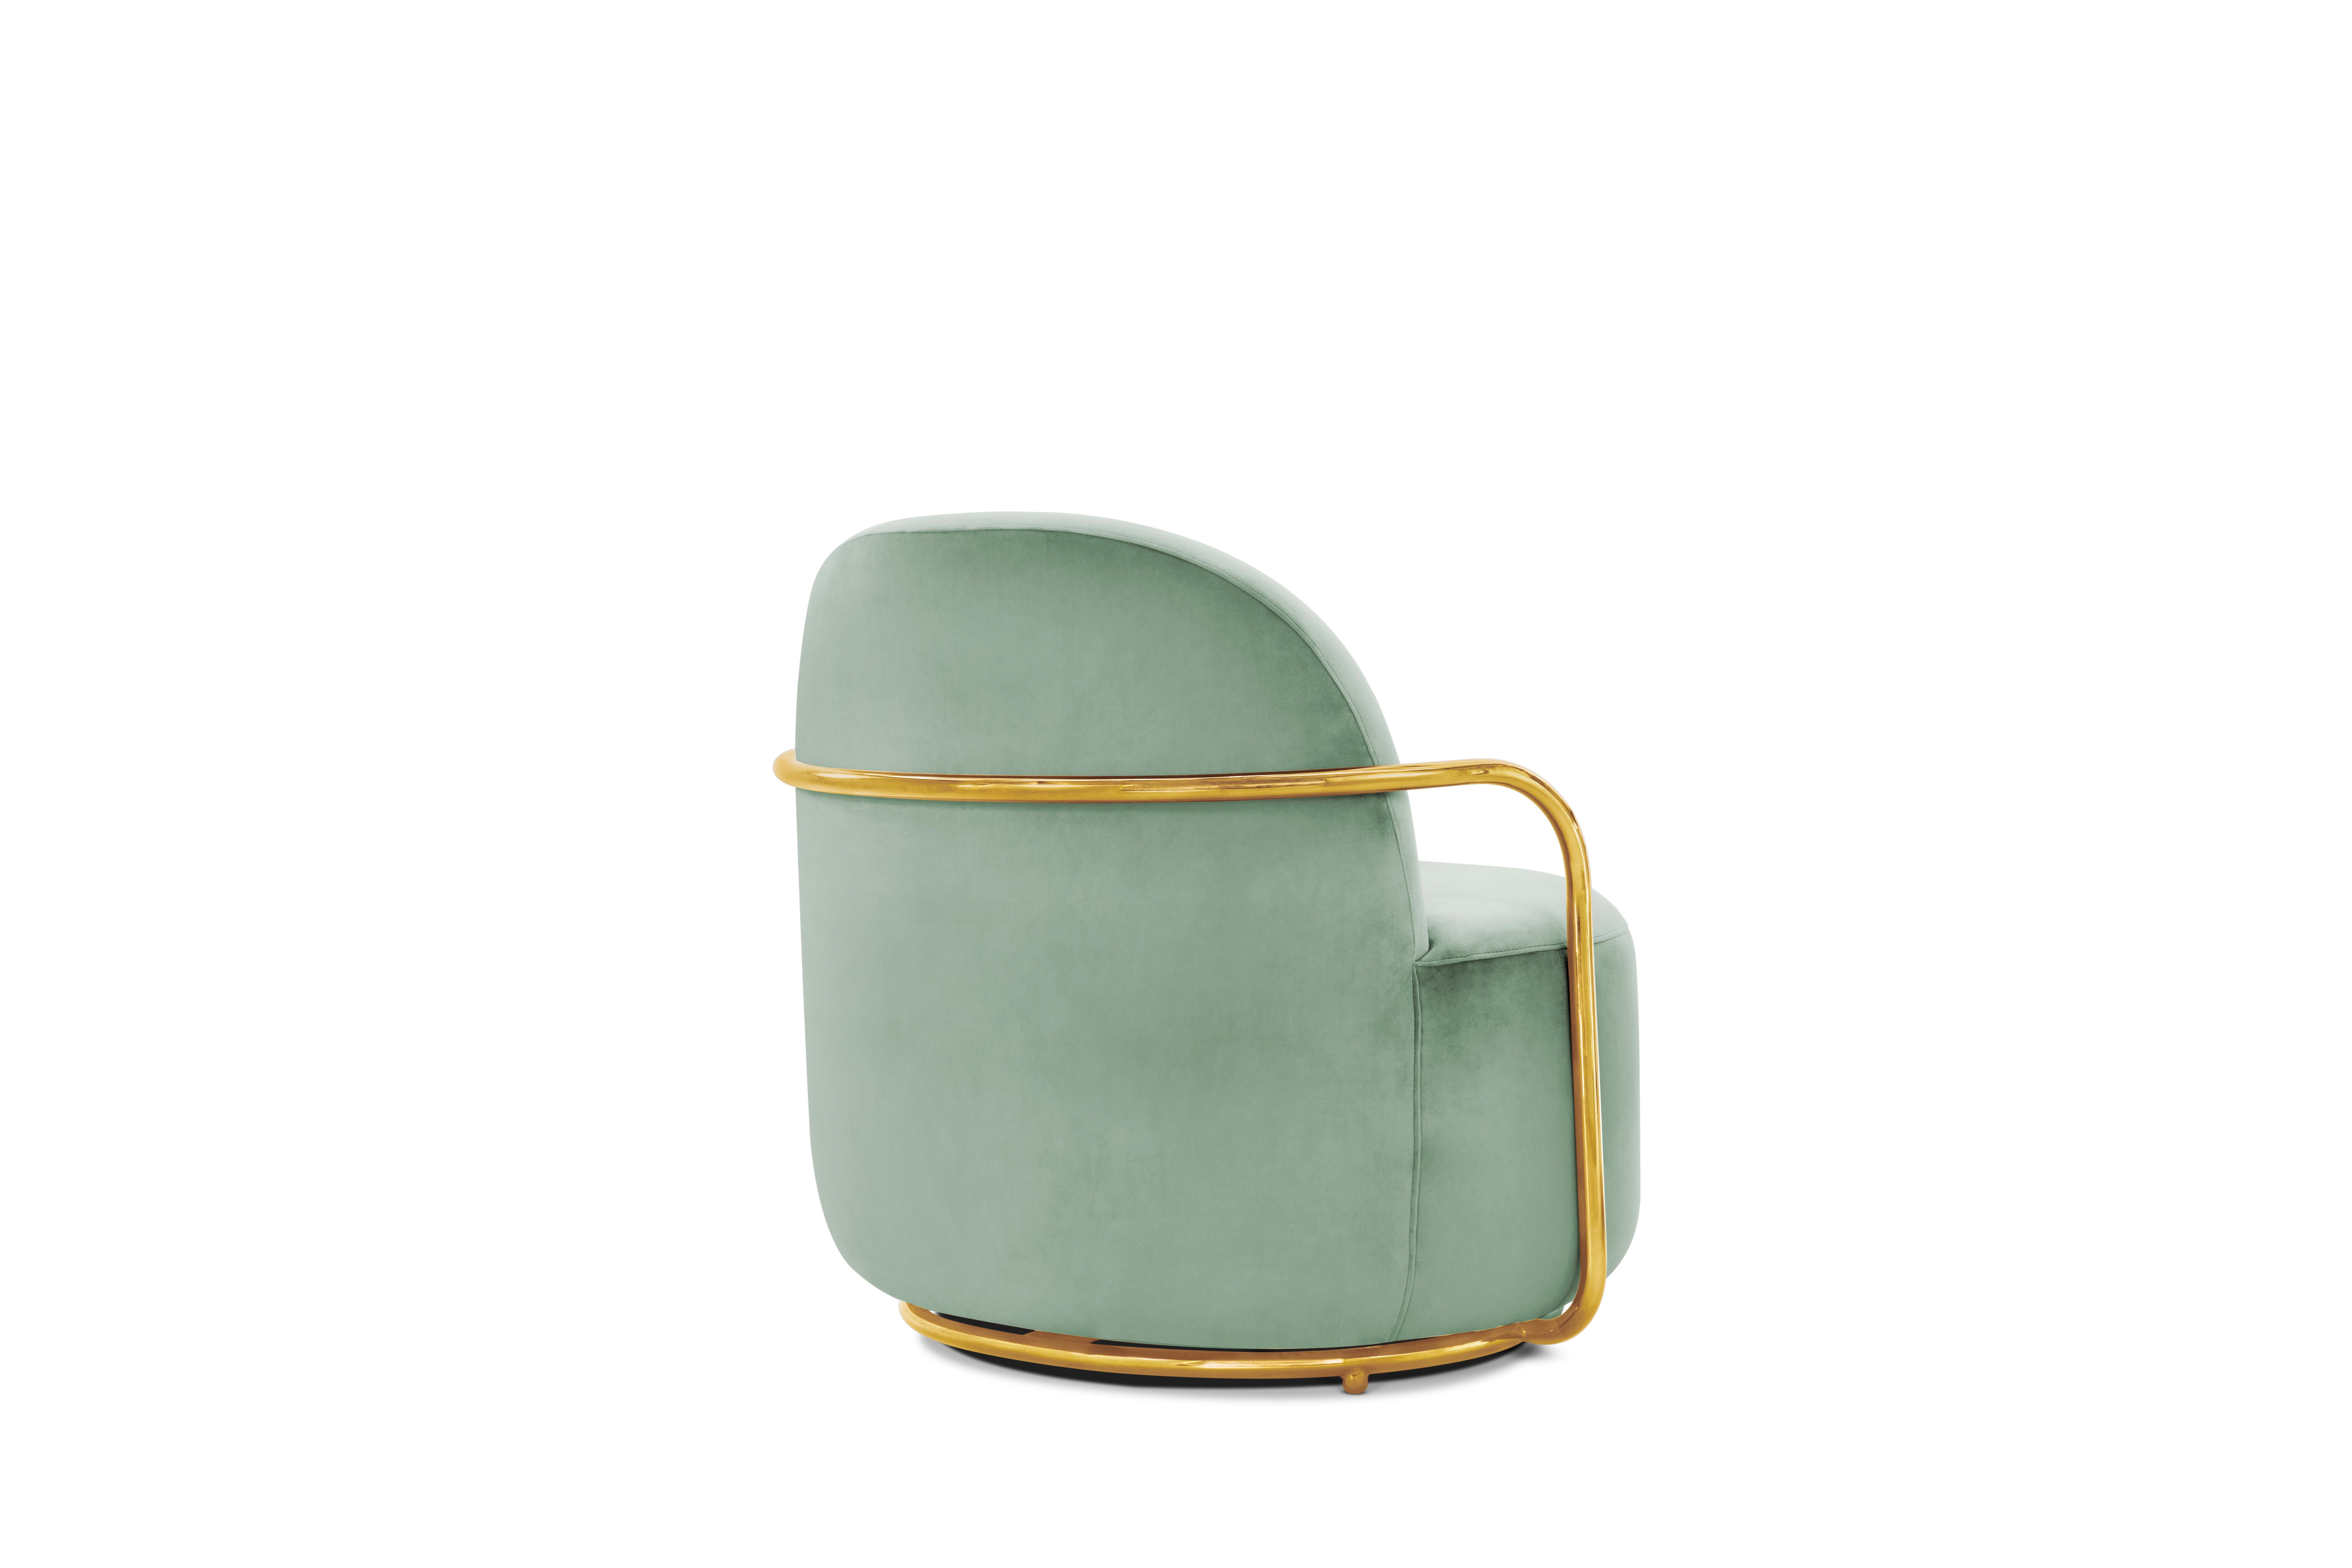 Der Komfort des Orion Lounge Chair with Plush Mint Green Velvet and Gold Arms von Nika Zupanccomplimentiert den kühlen mintgrünen Samt und die goldenen Metallarme.

Nika Zupanc, eine auffallend renommierte slowenische Designerin, scheut sich nicht,